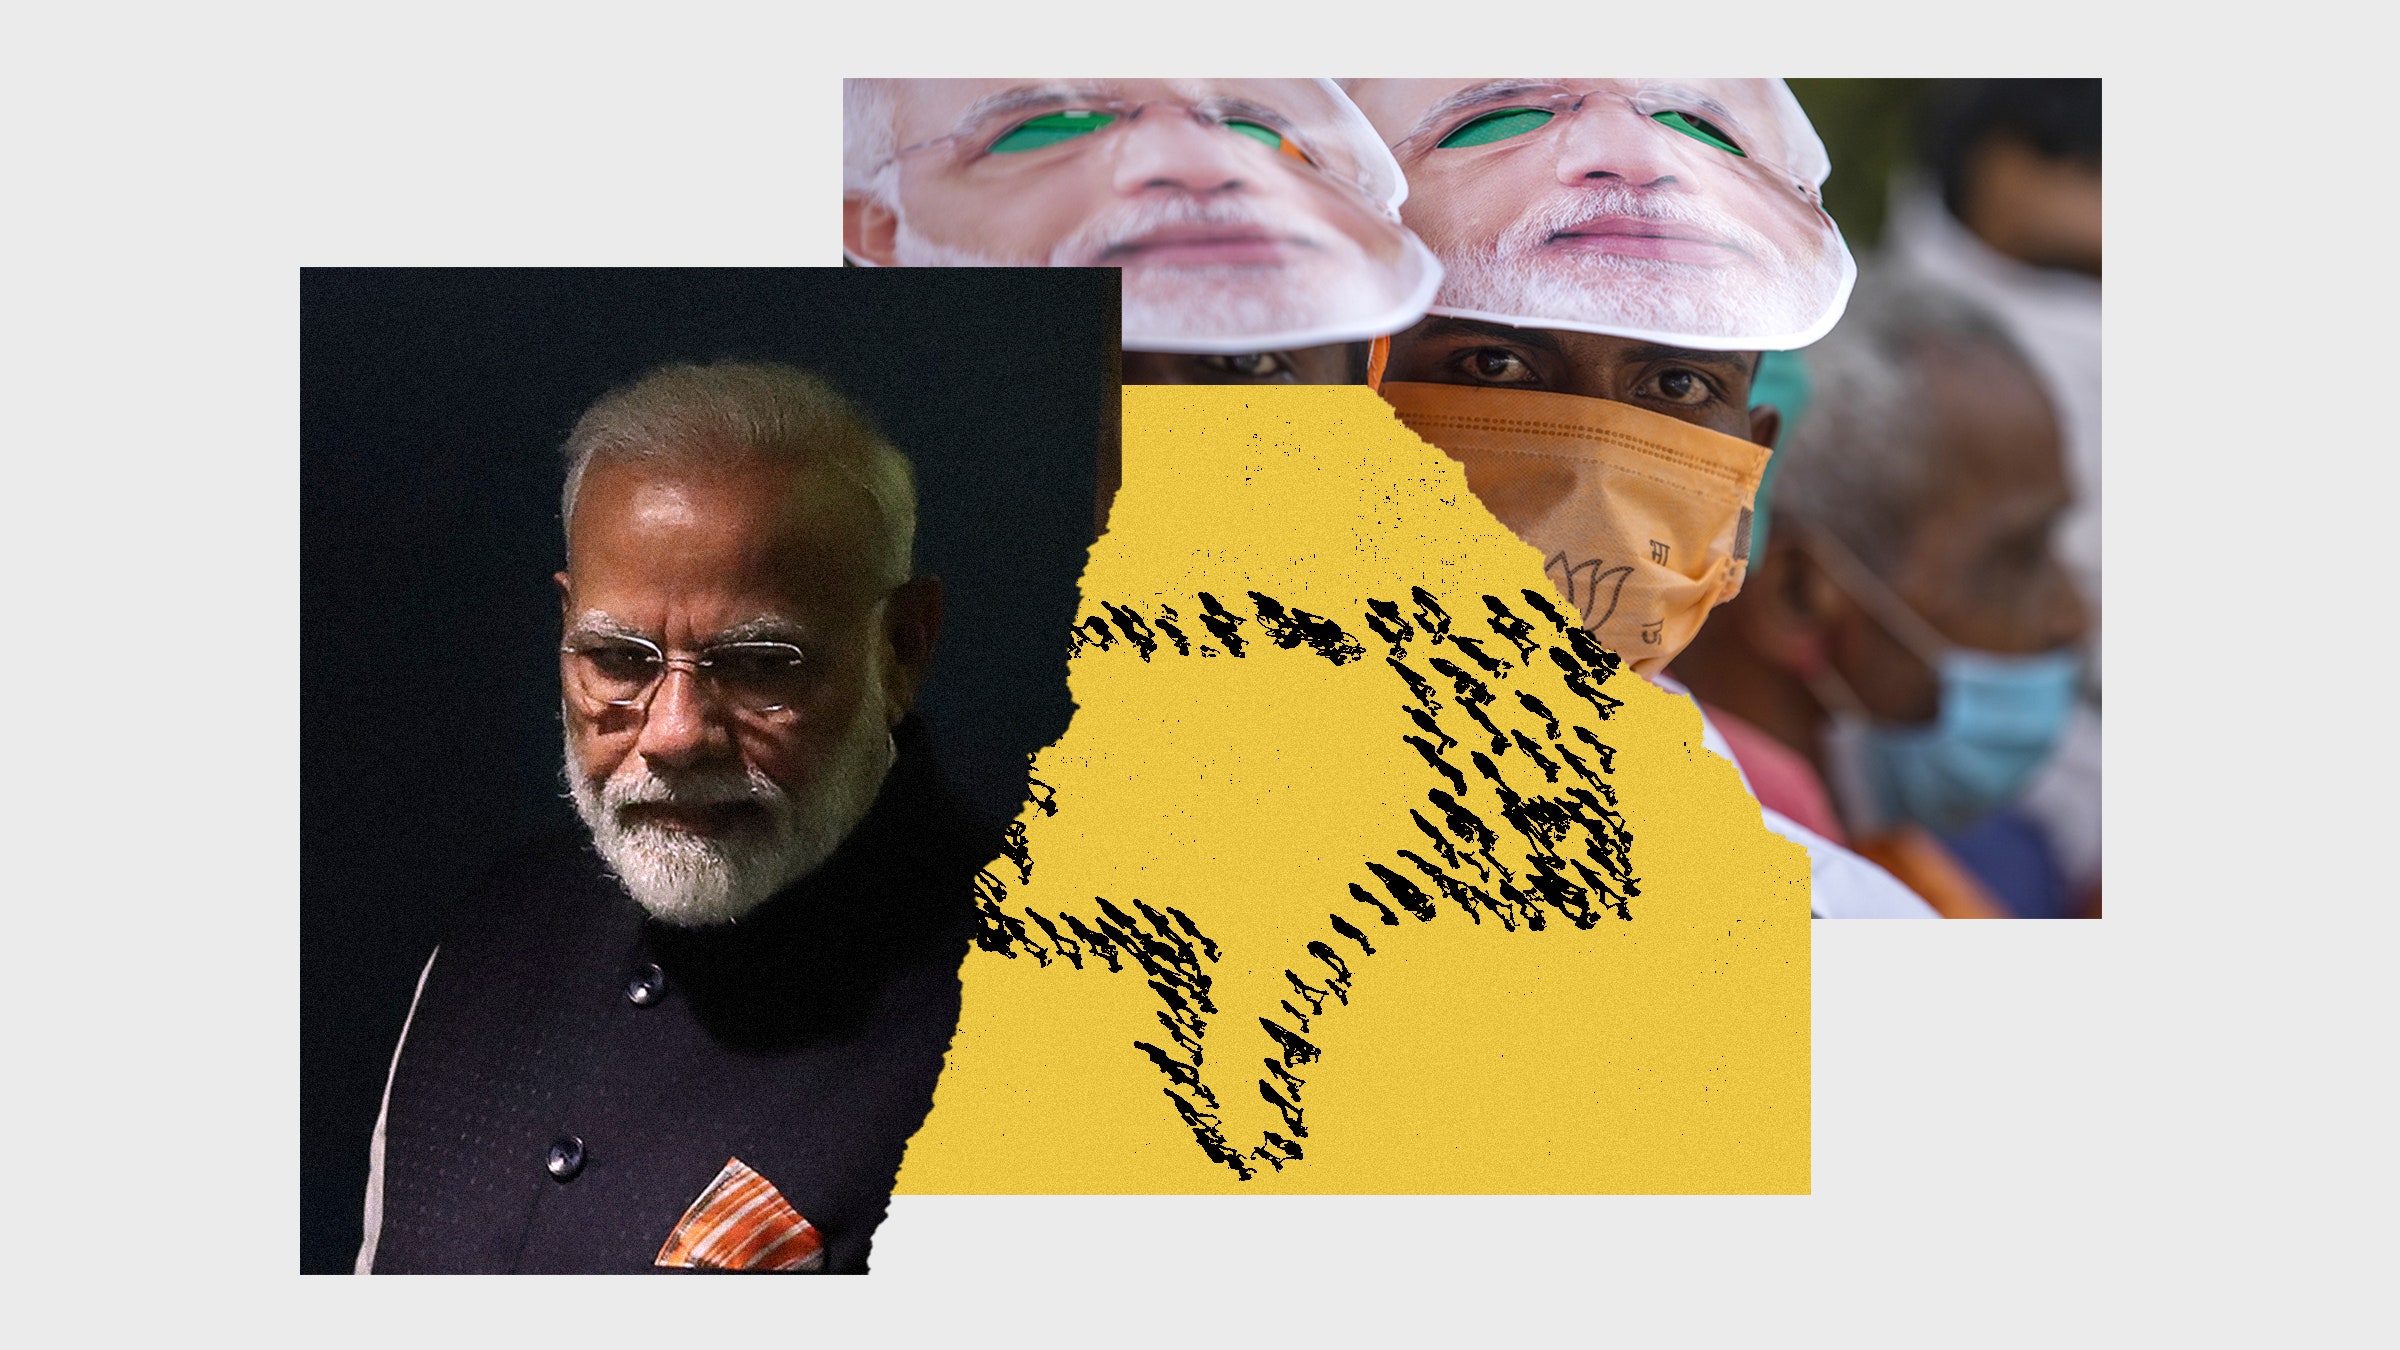 Colagem das imagens do primeir o-ministro de Modi, manifestantes indianos e botão invertido 